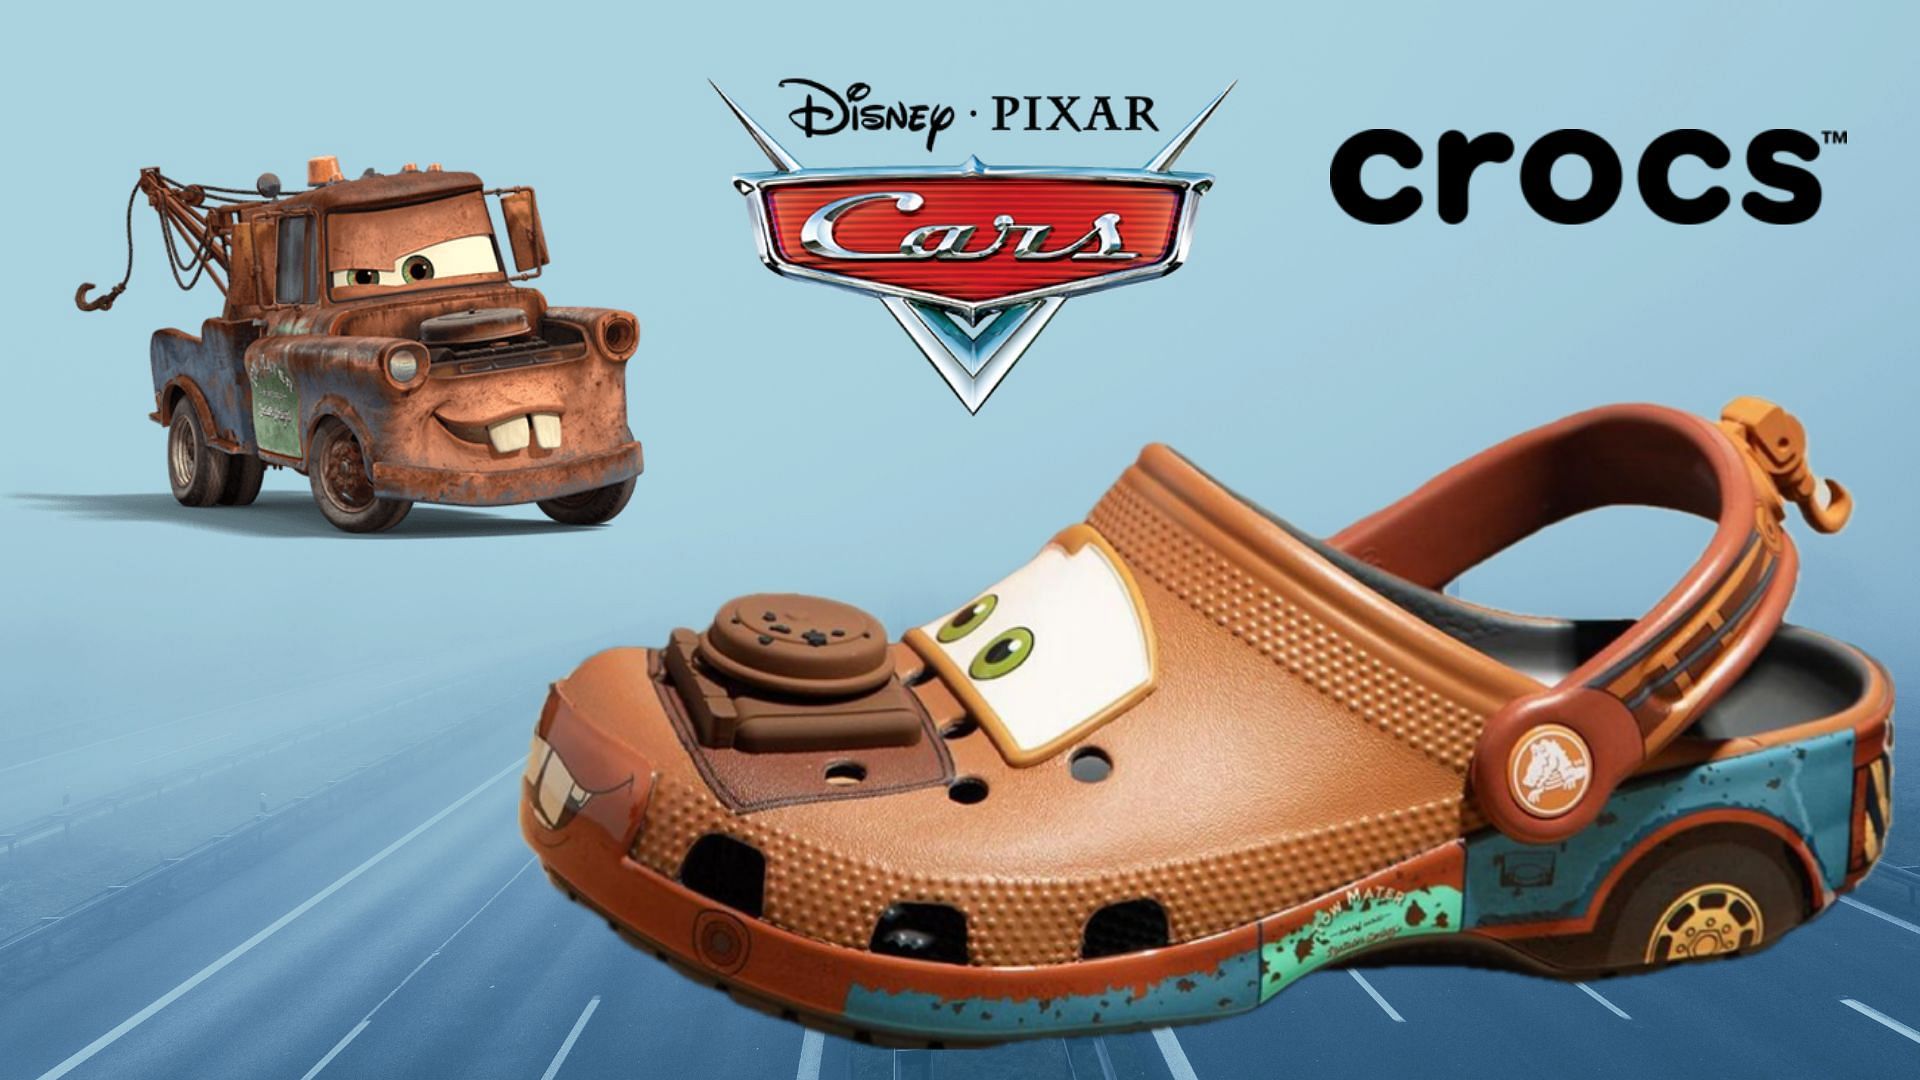 Pixar Cars: Disney Pixar x Crocs “Mater” Classic Clog: Where to